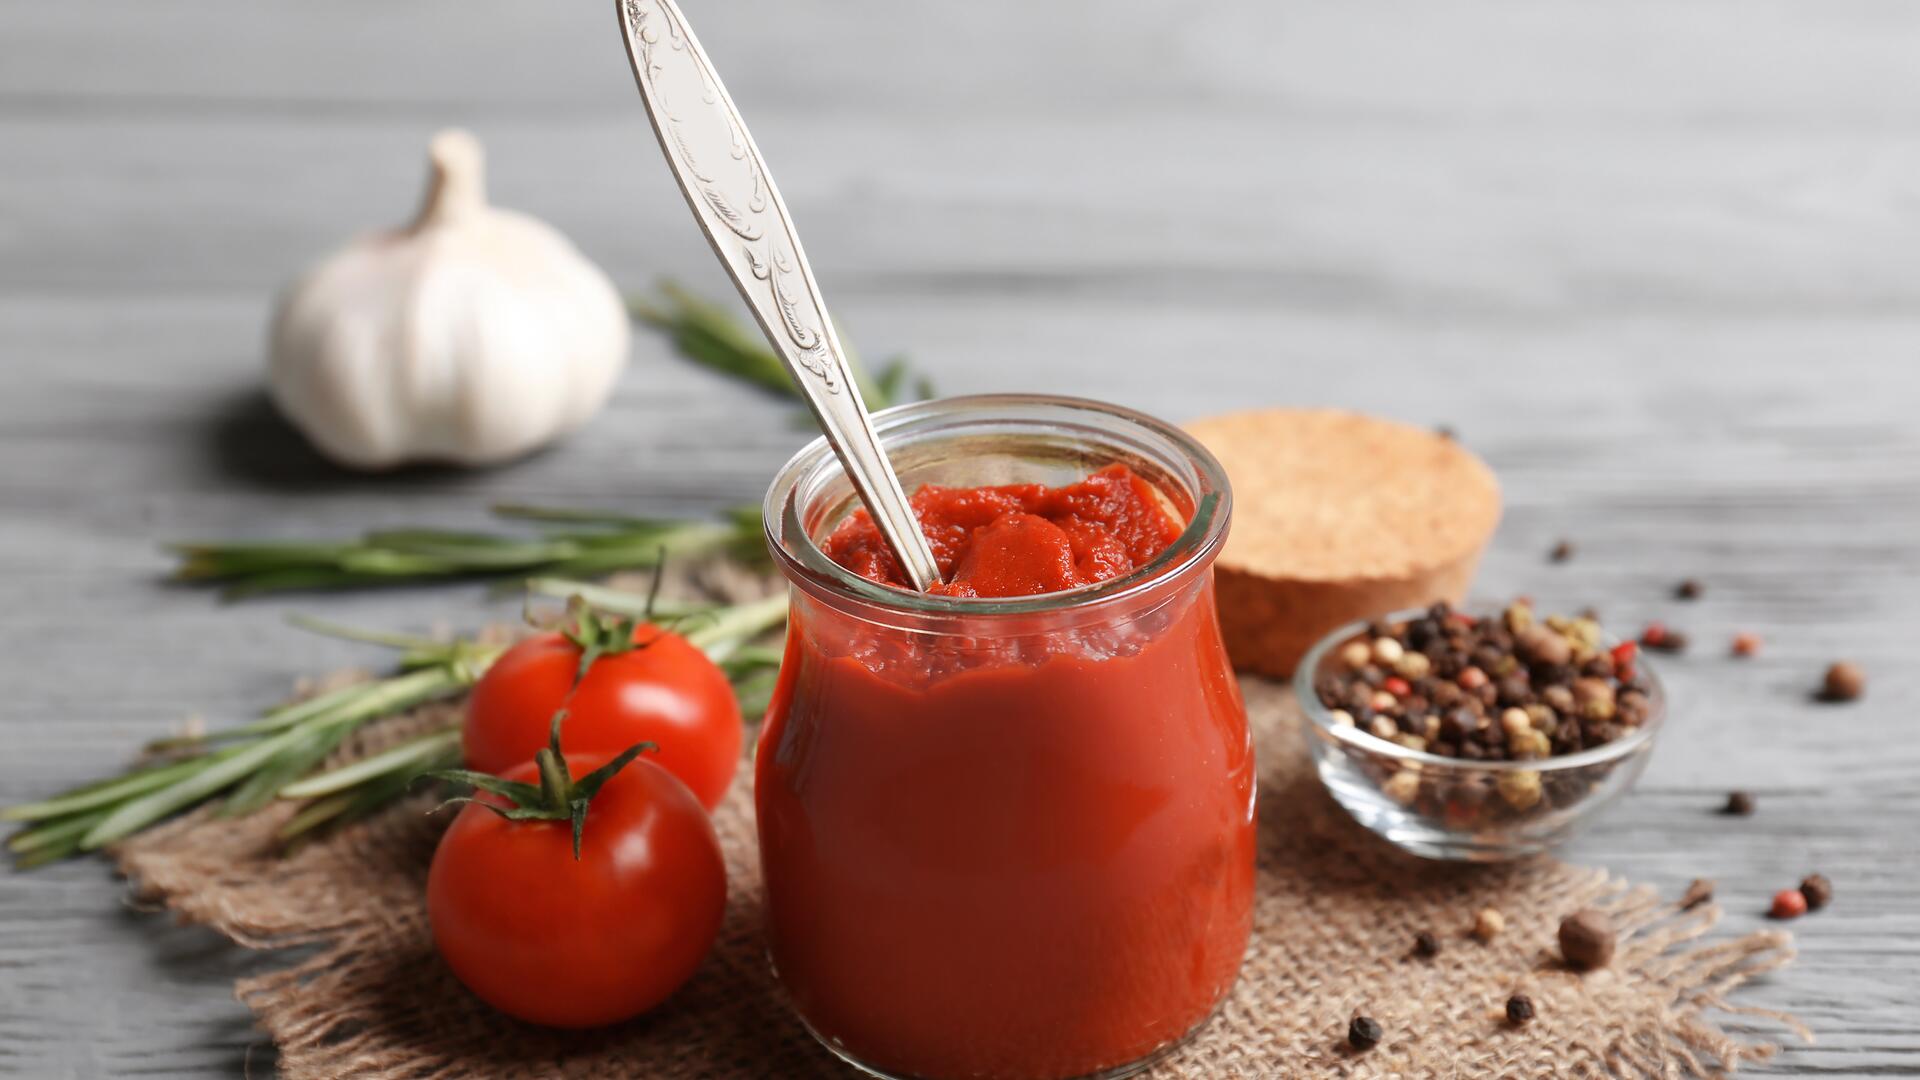 Gefragter Klassiker: Tomatenmark steht bei vielen Speisen auf der Zutatenliste.